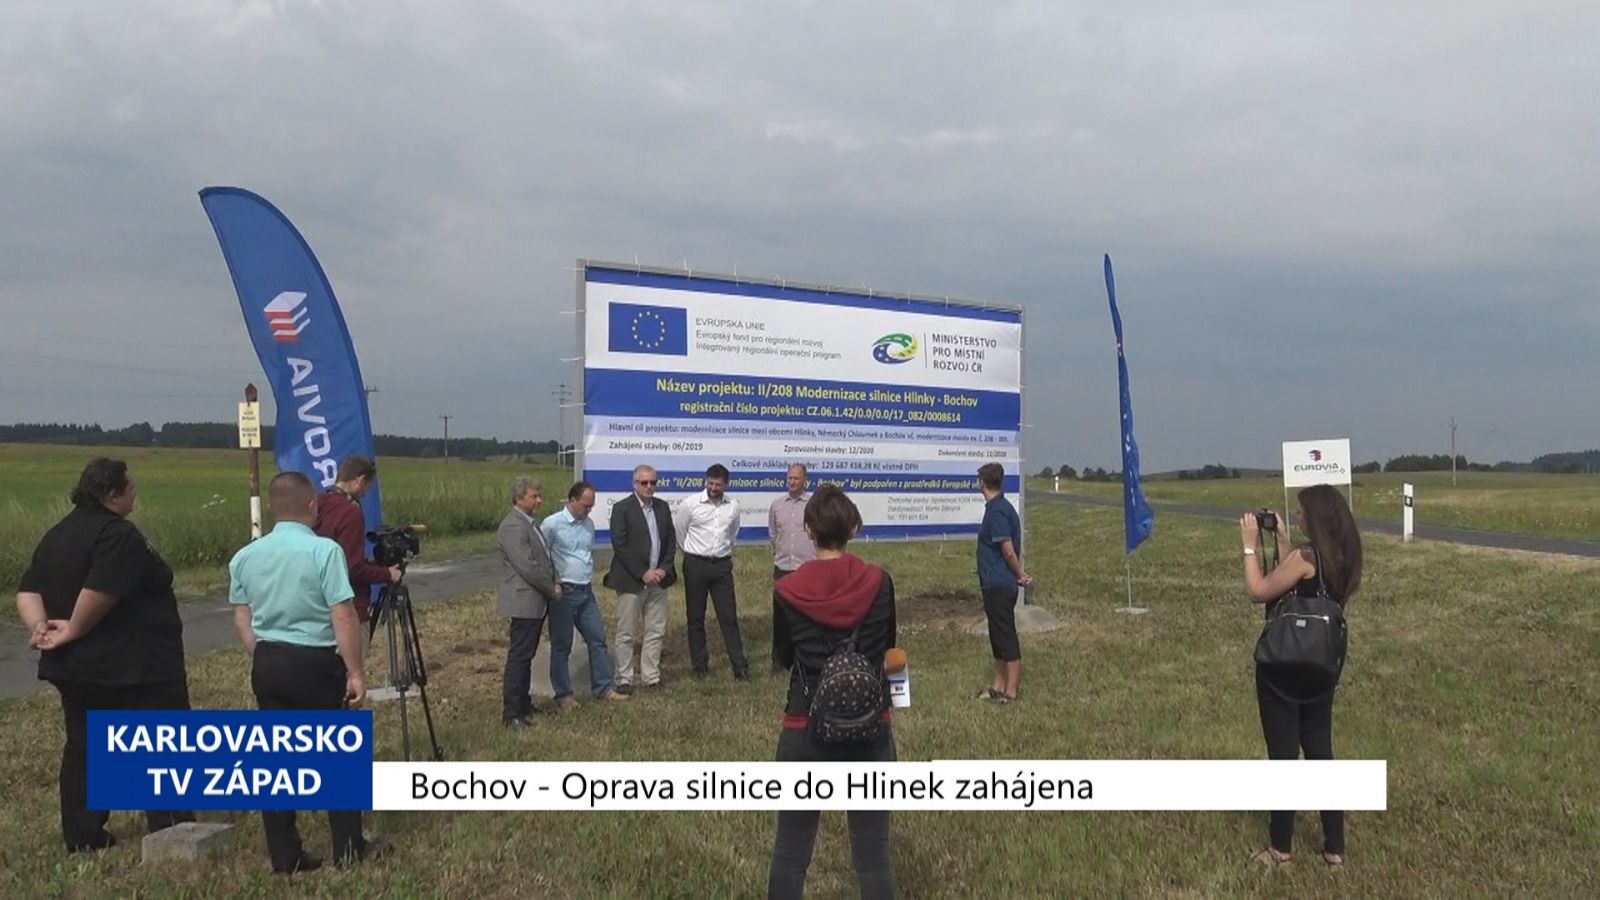 Bochov: Oprava silnice do Hlinek zahájena (TV Západ)